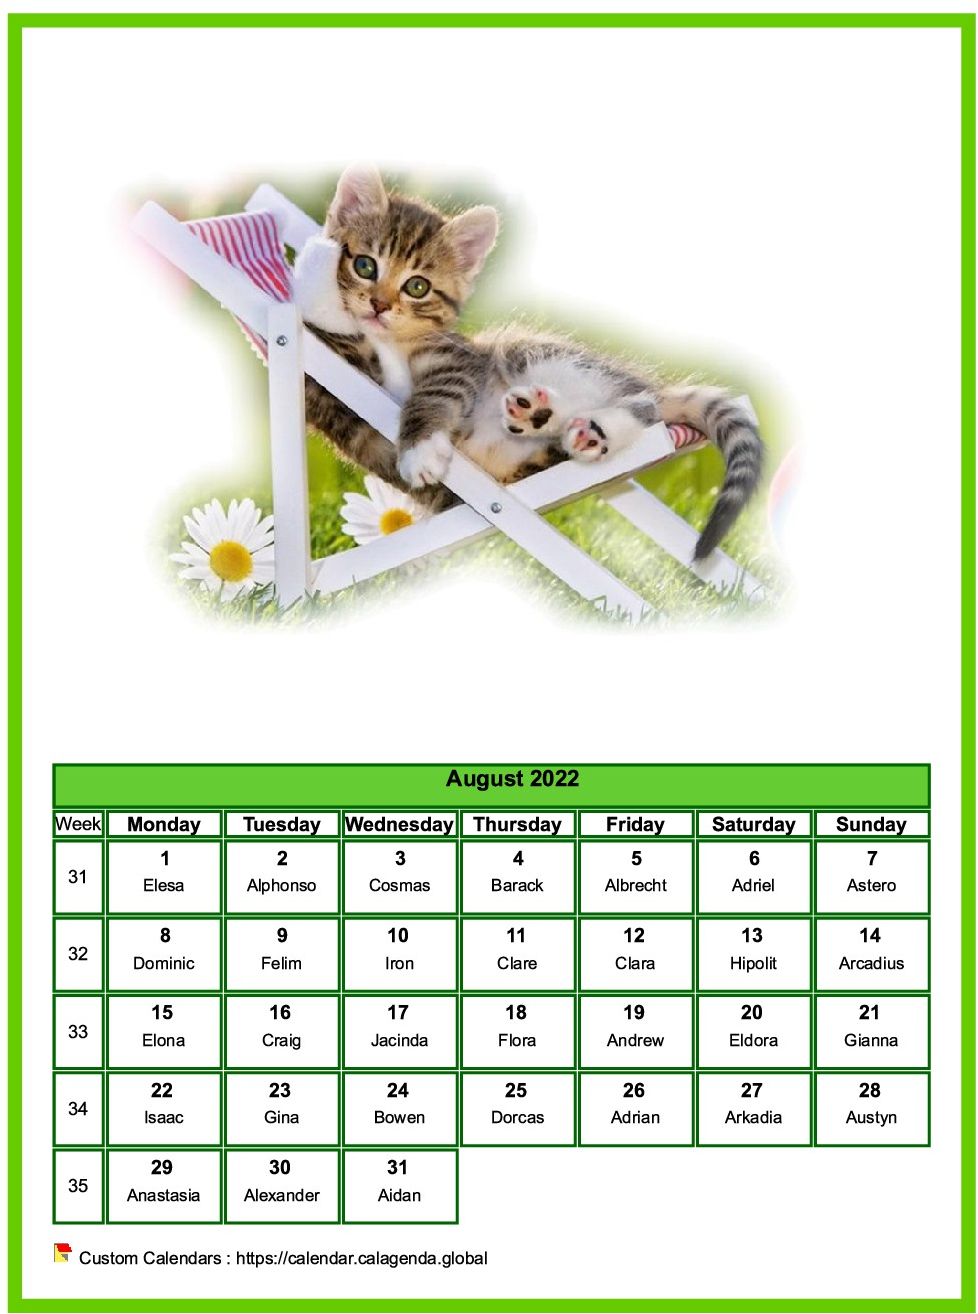 Calendar august 2022 cats